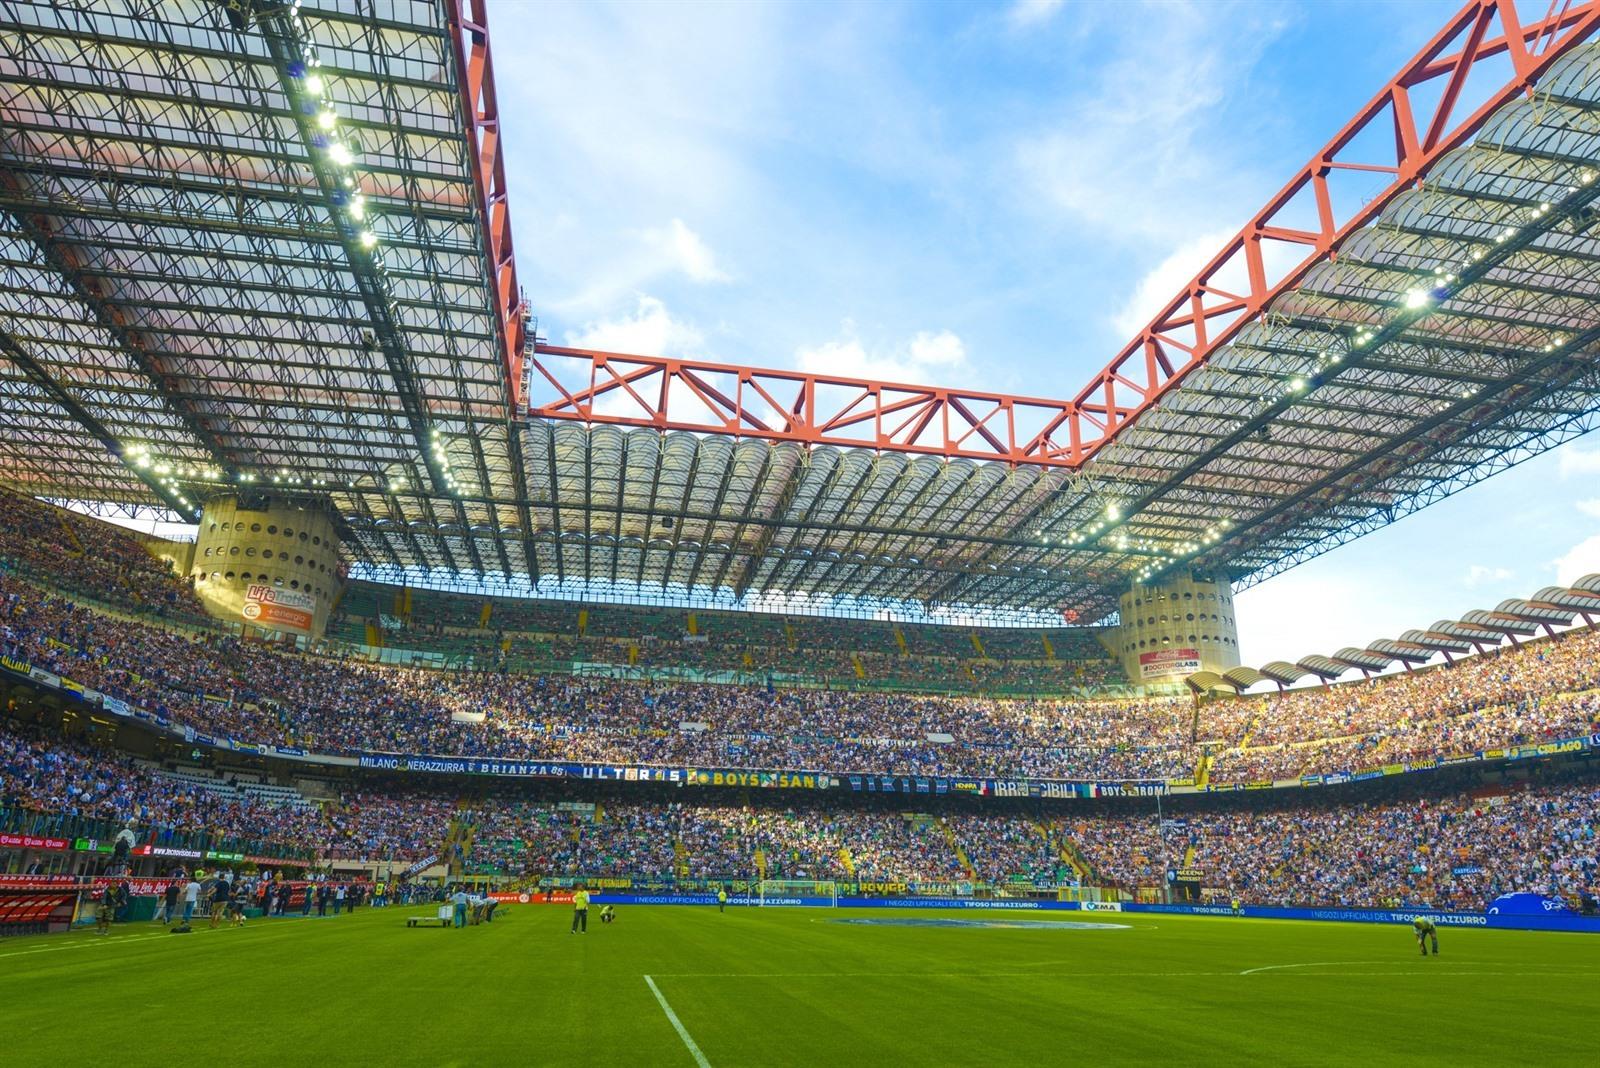 Stadion San Siro in Milaan bezoeken? Info, tickets & tours